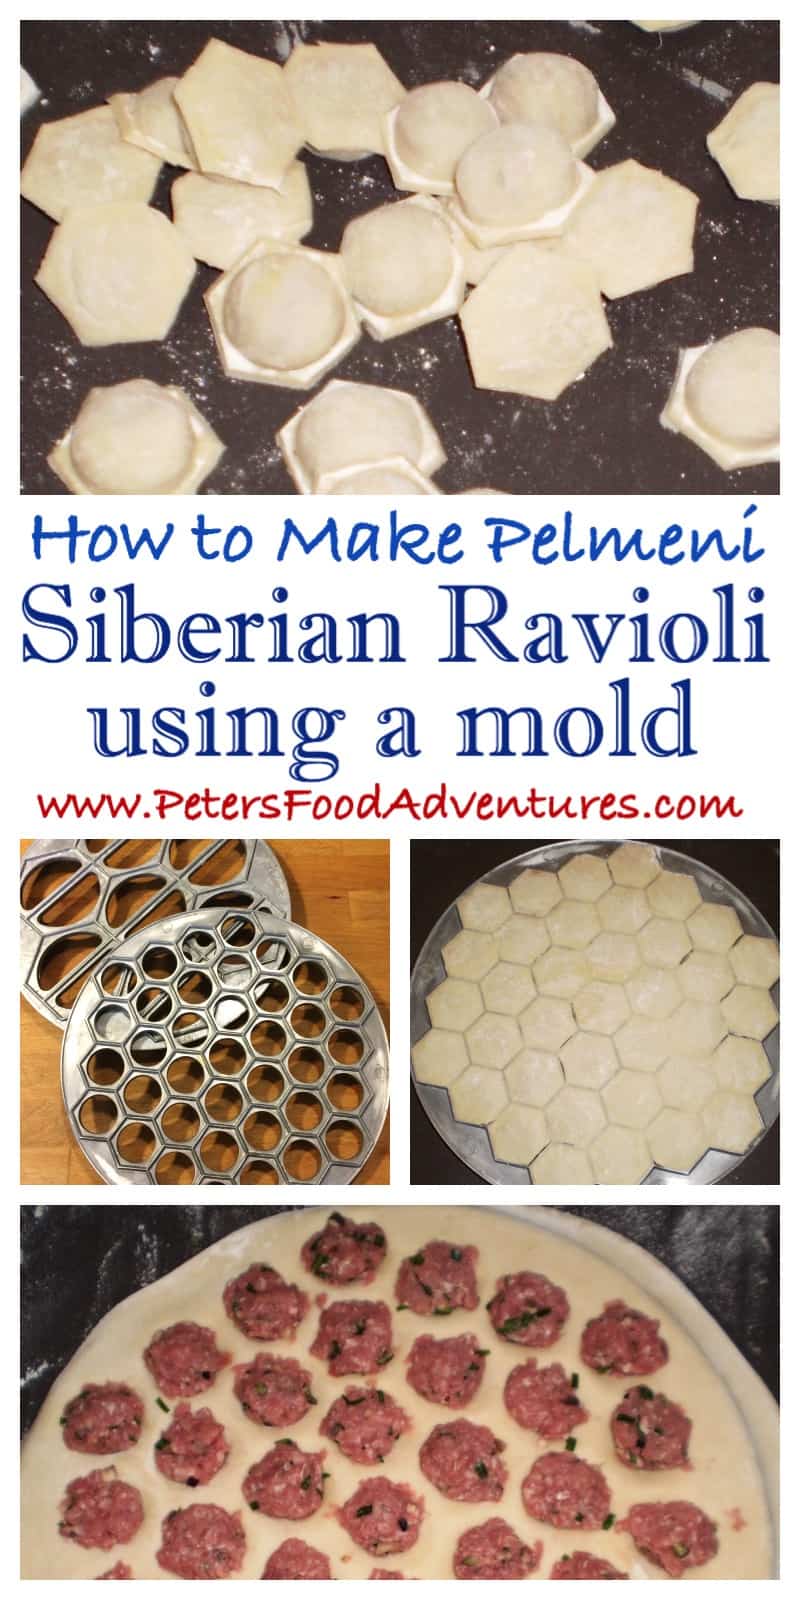 pelmeni using a mold